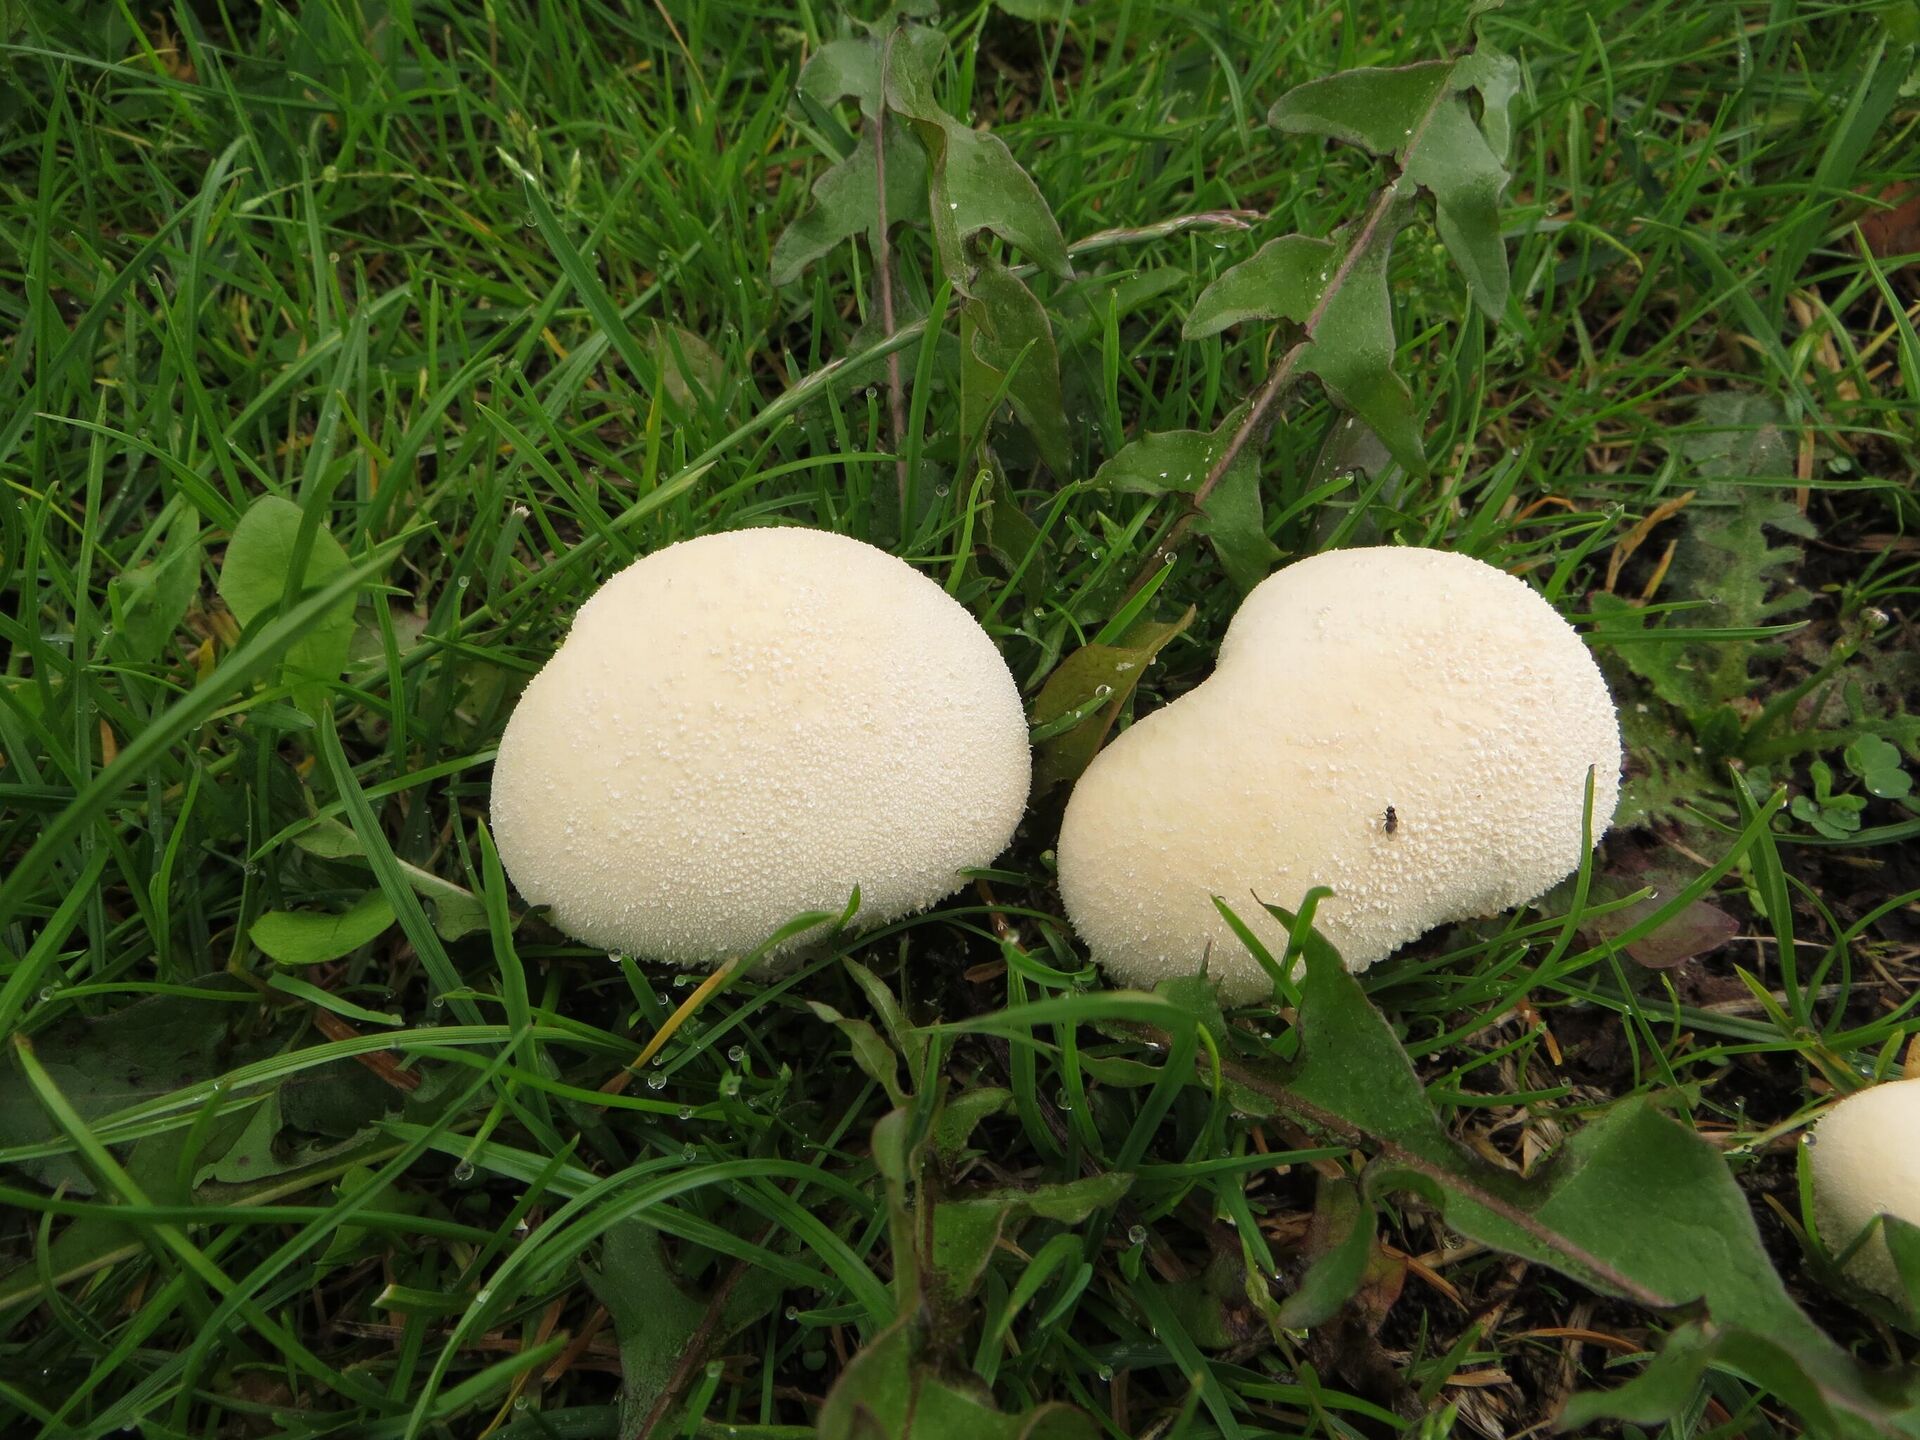 Дождевик съедобный — описание гриба, где растет, похожие виды, фото